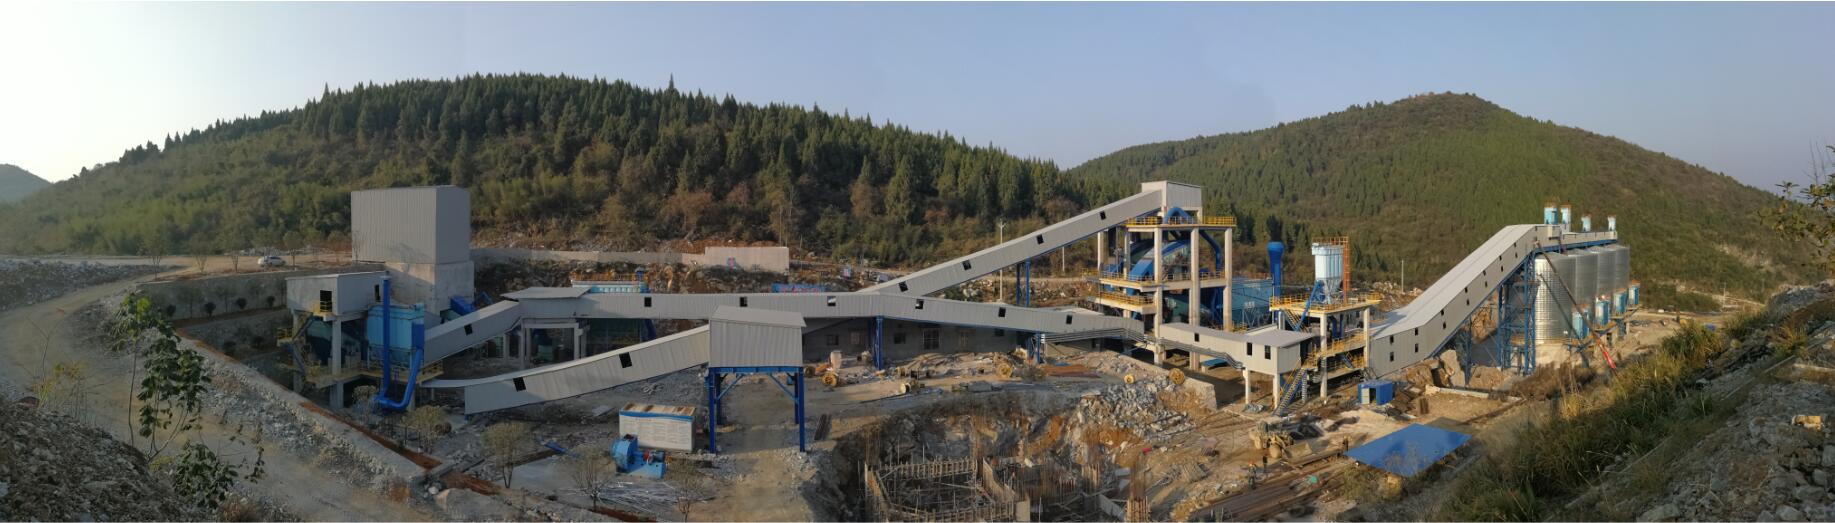 崇阳昌华建材科技有限公司年产150万吨骨料生产线建设工程